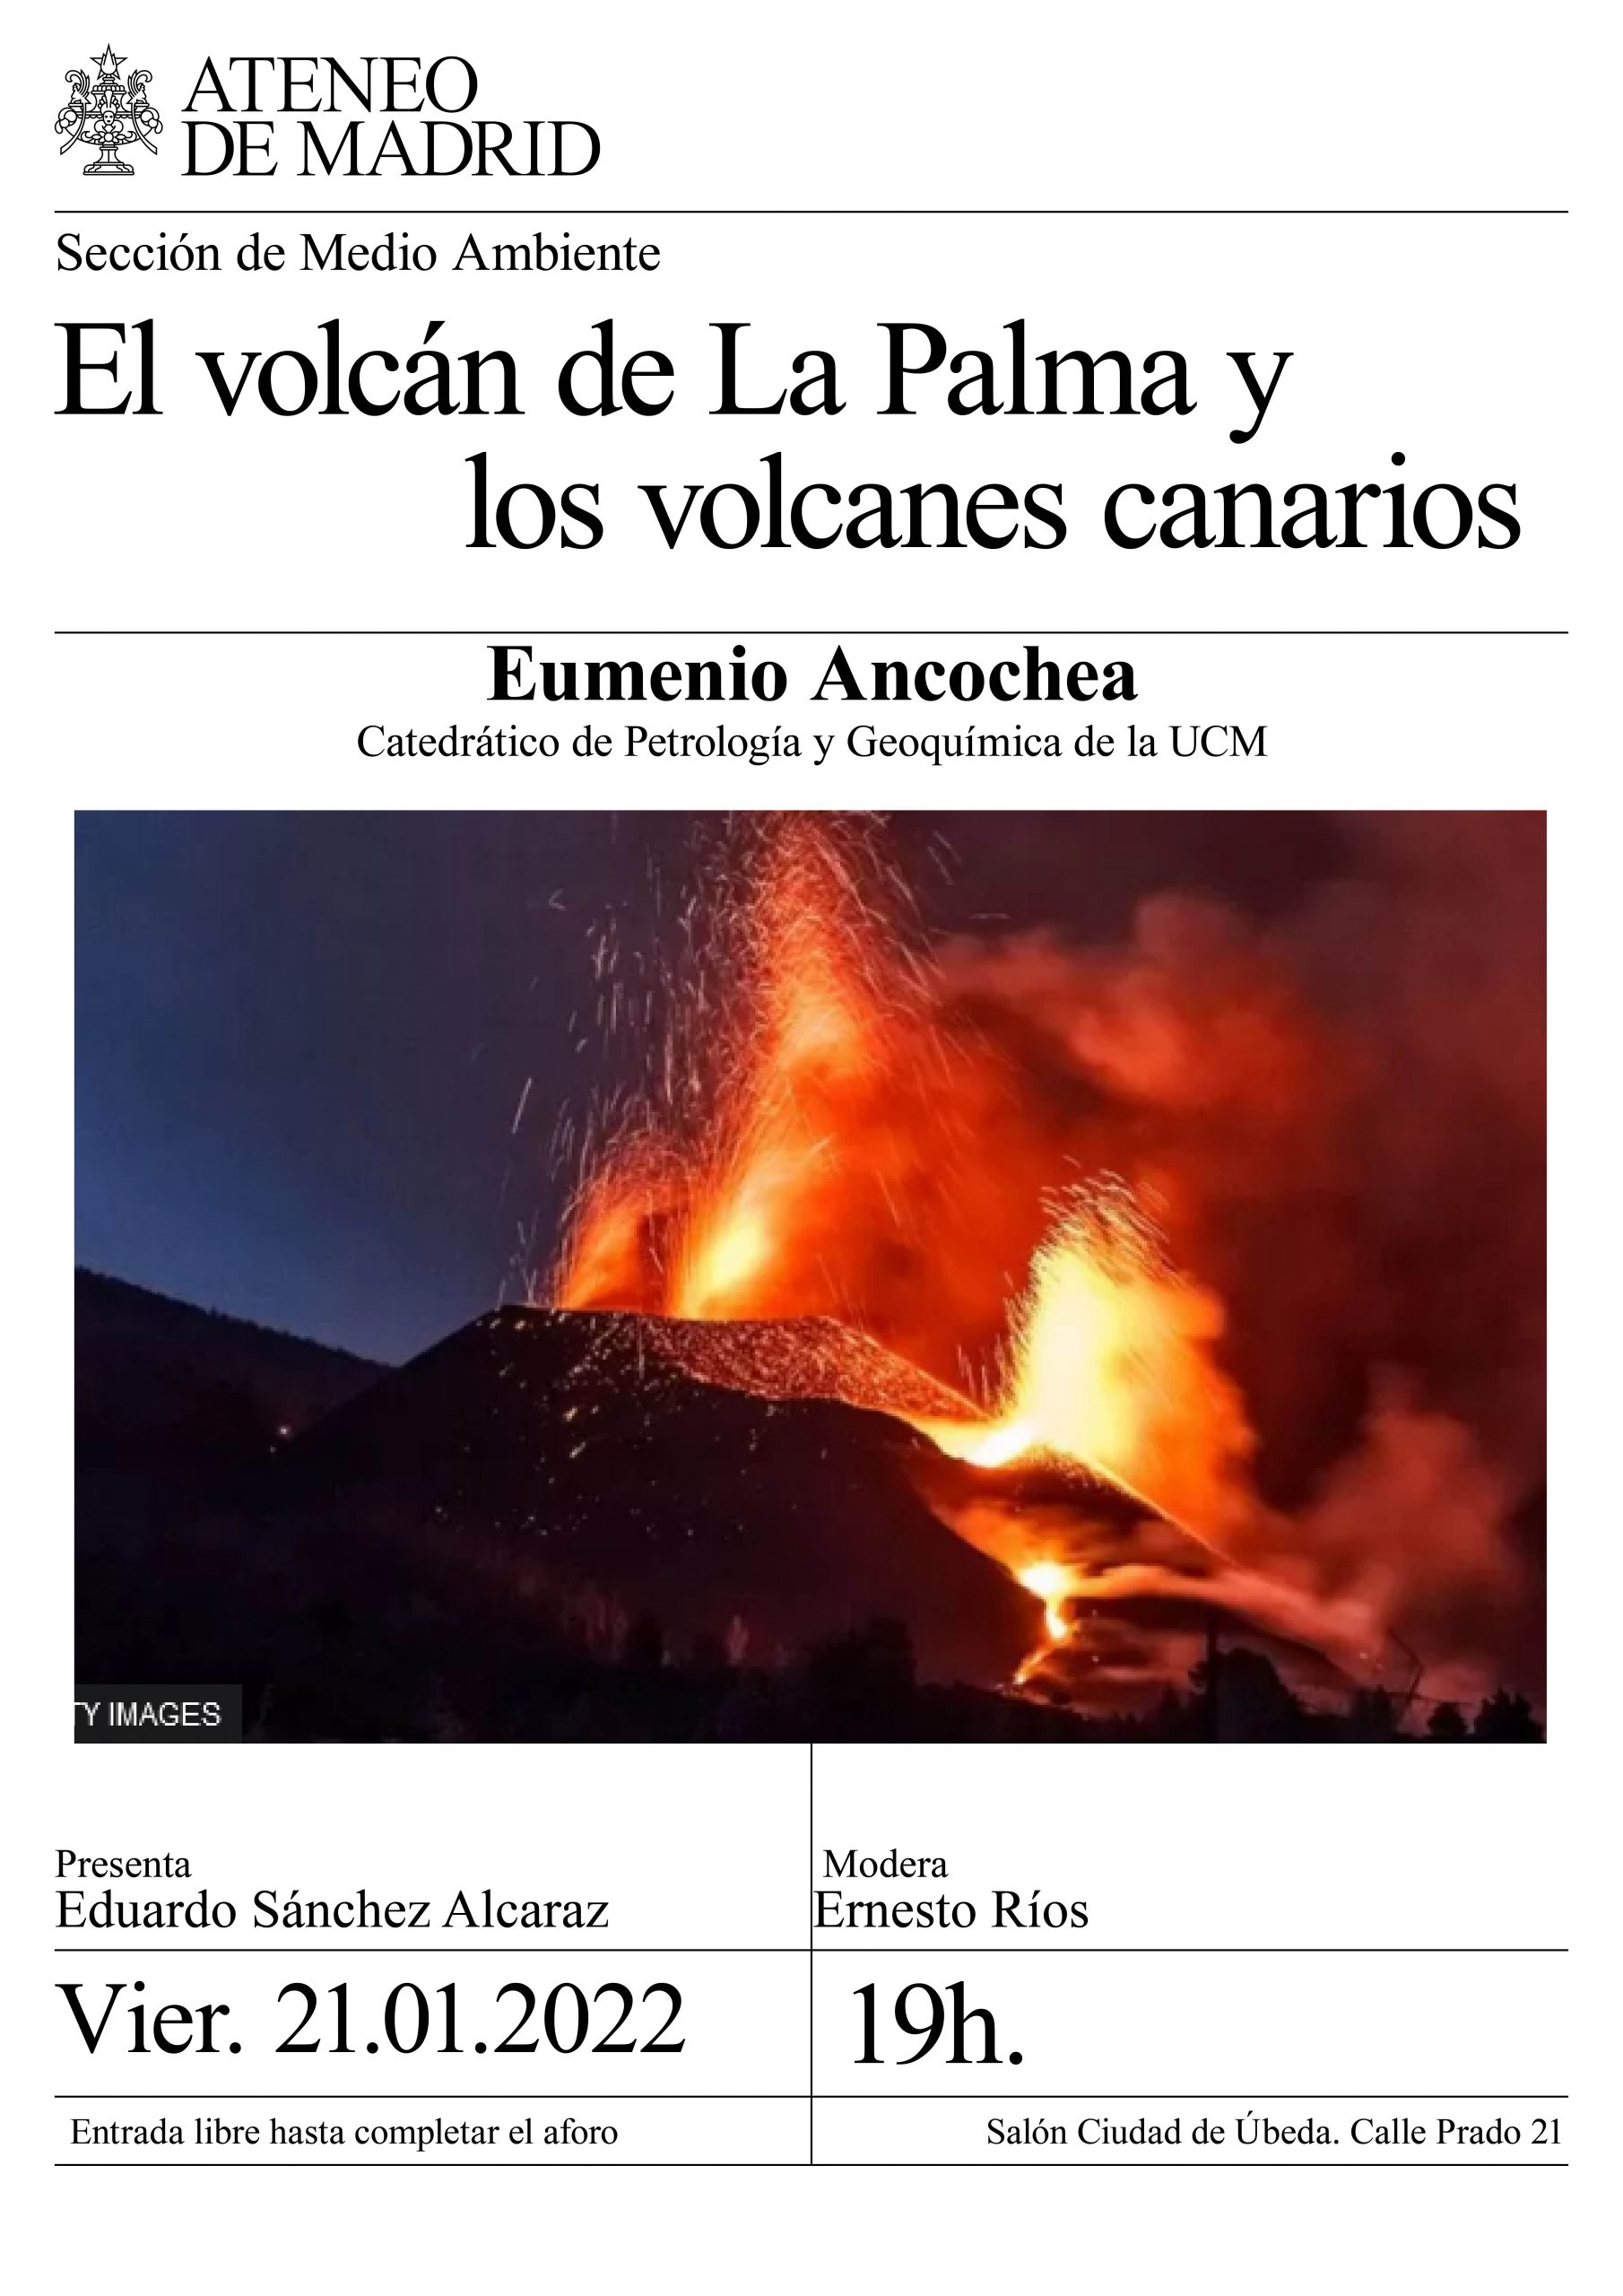 El volcán de La Palma y los volcanes canarios.